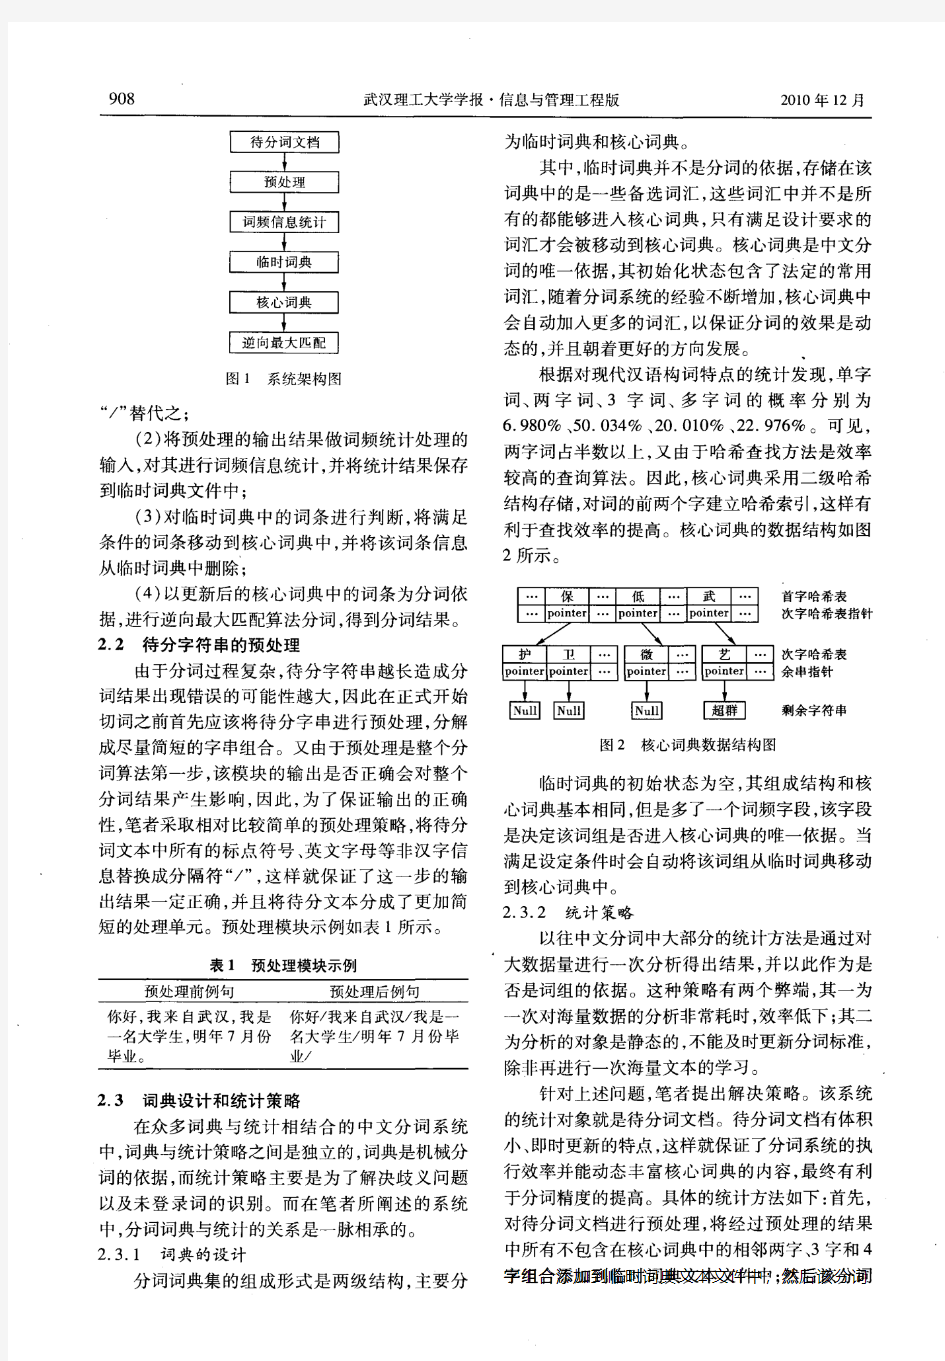 词典与统计相结合的中文分词算法研究